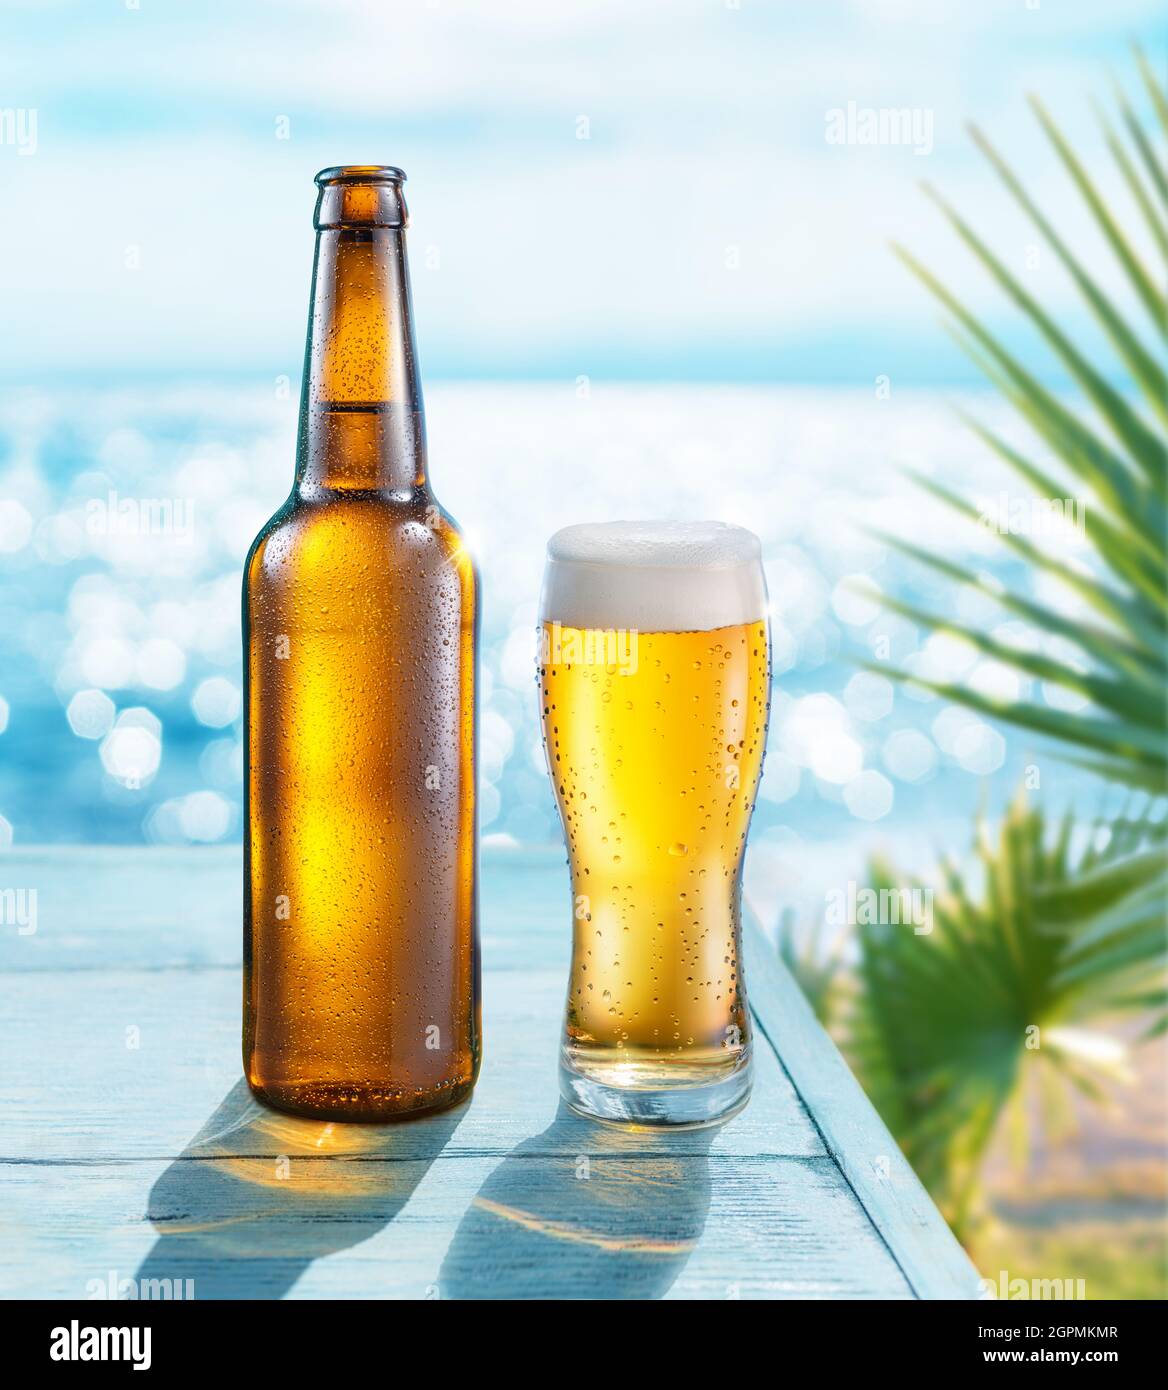 Geöffnete Flasche Bier und Bierglas mit Kondenswasser auf dem Holztisch. Verschwommenes glitzerndes Meer im Hintergrund. Sommerliche Stimmung. Stockfoto